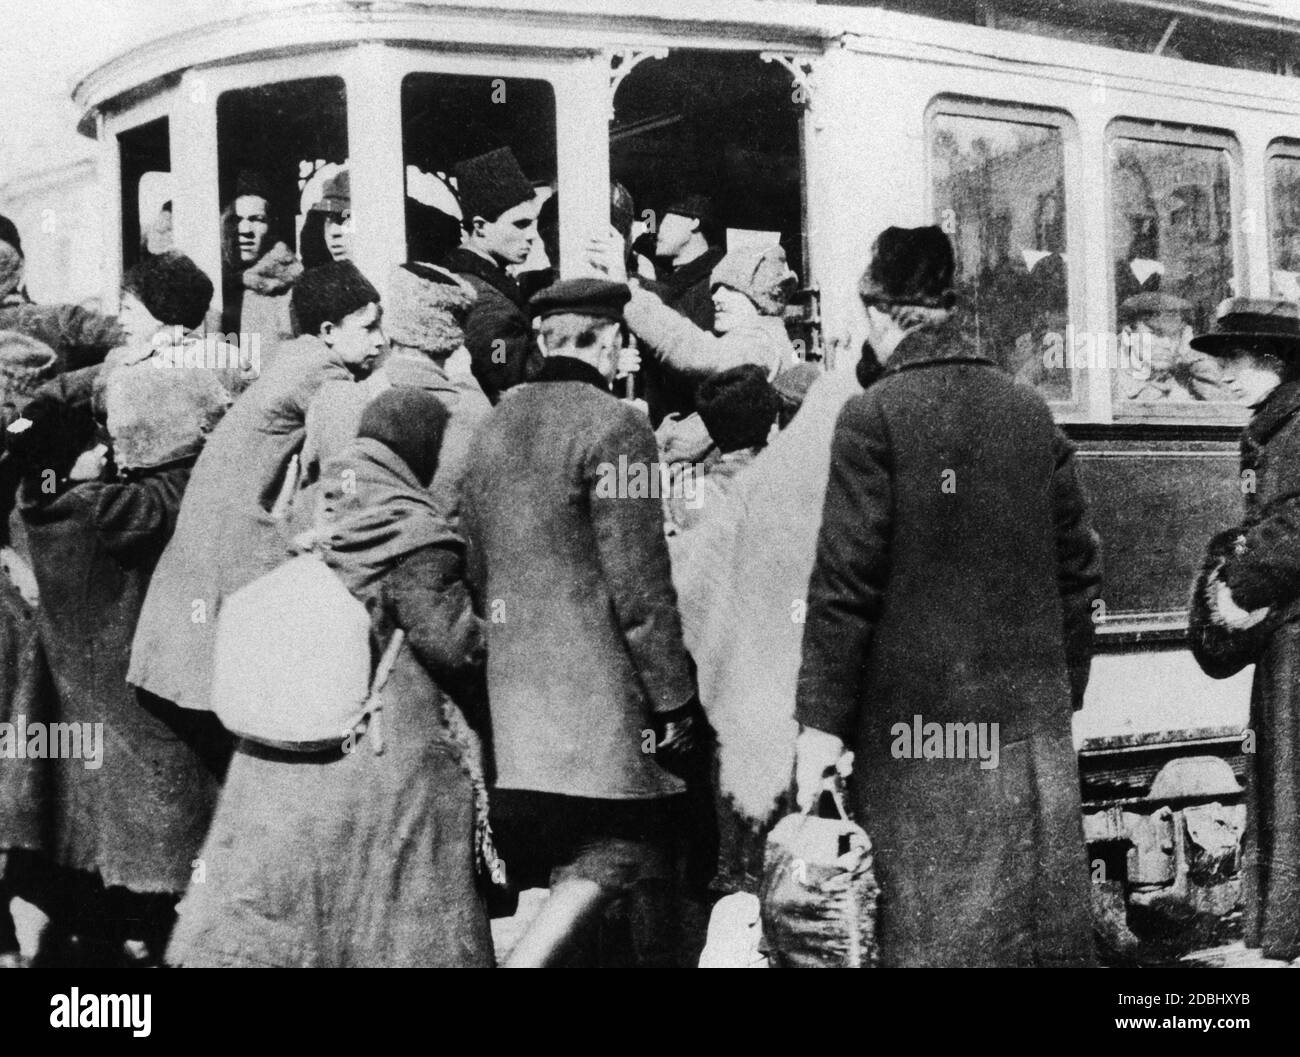 Des foules de gens avec leurs sacs pleins de hamster achats pour l'hiver de la faim de 1921/22 dans un tramway allant à la périphérie de Moscou. Le trajet en tramway est gratuit. Banque D'Images